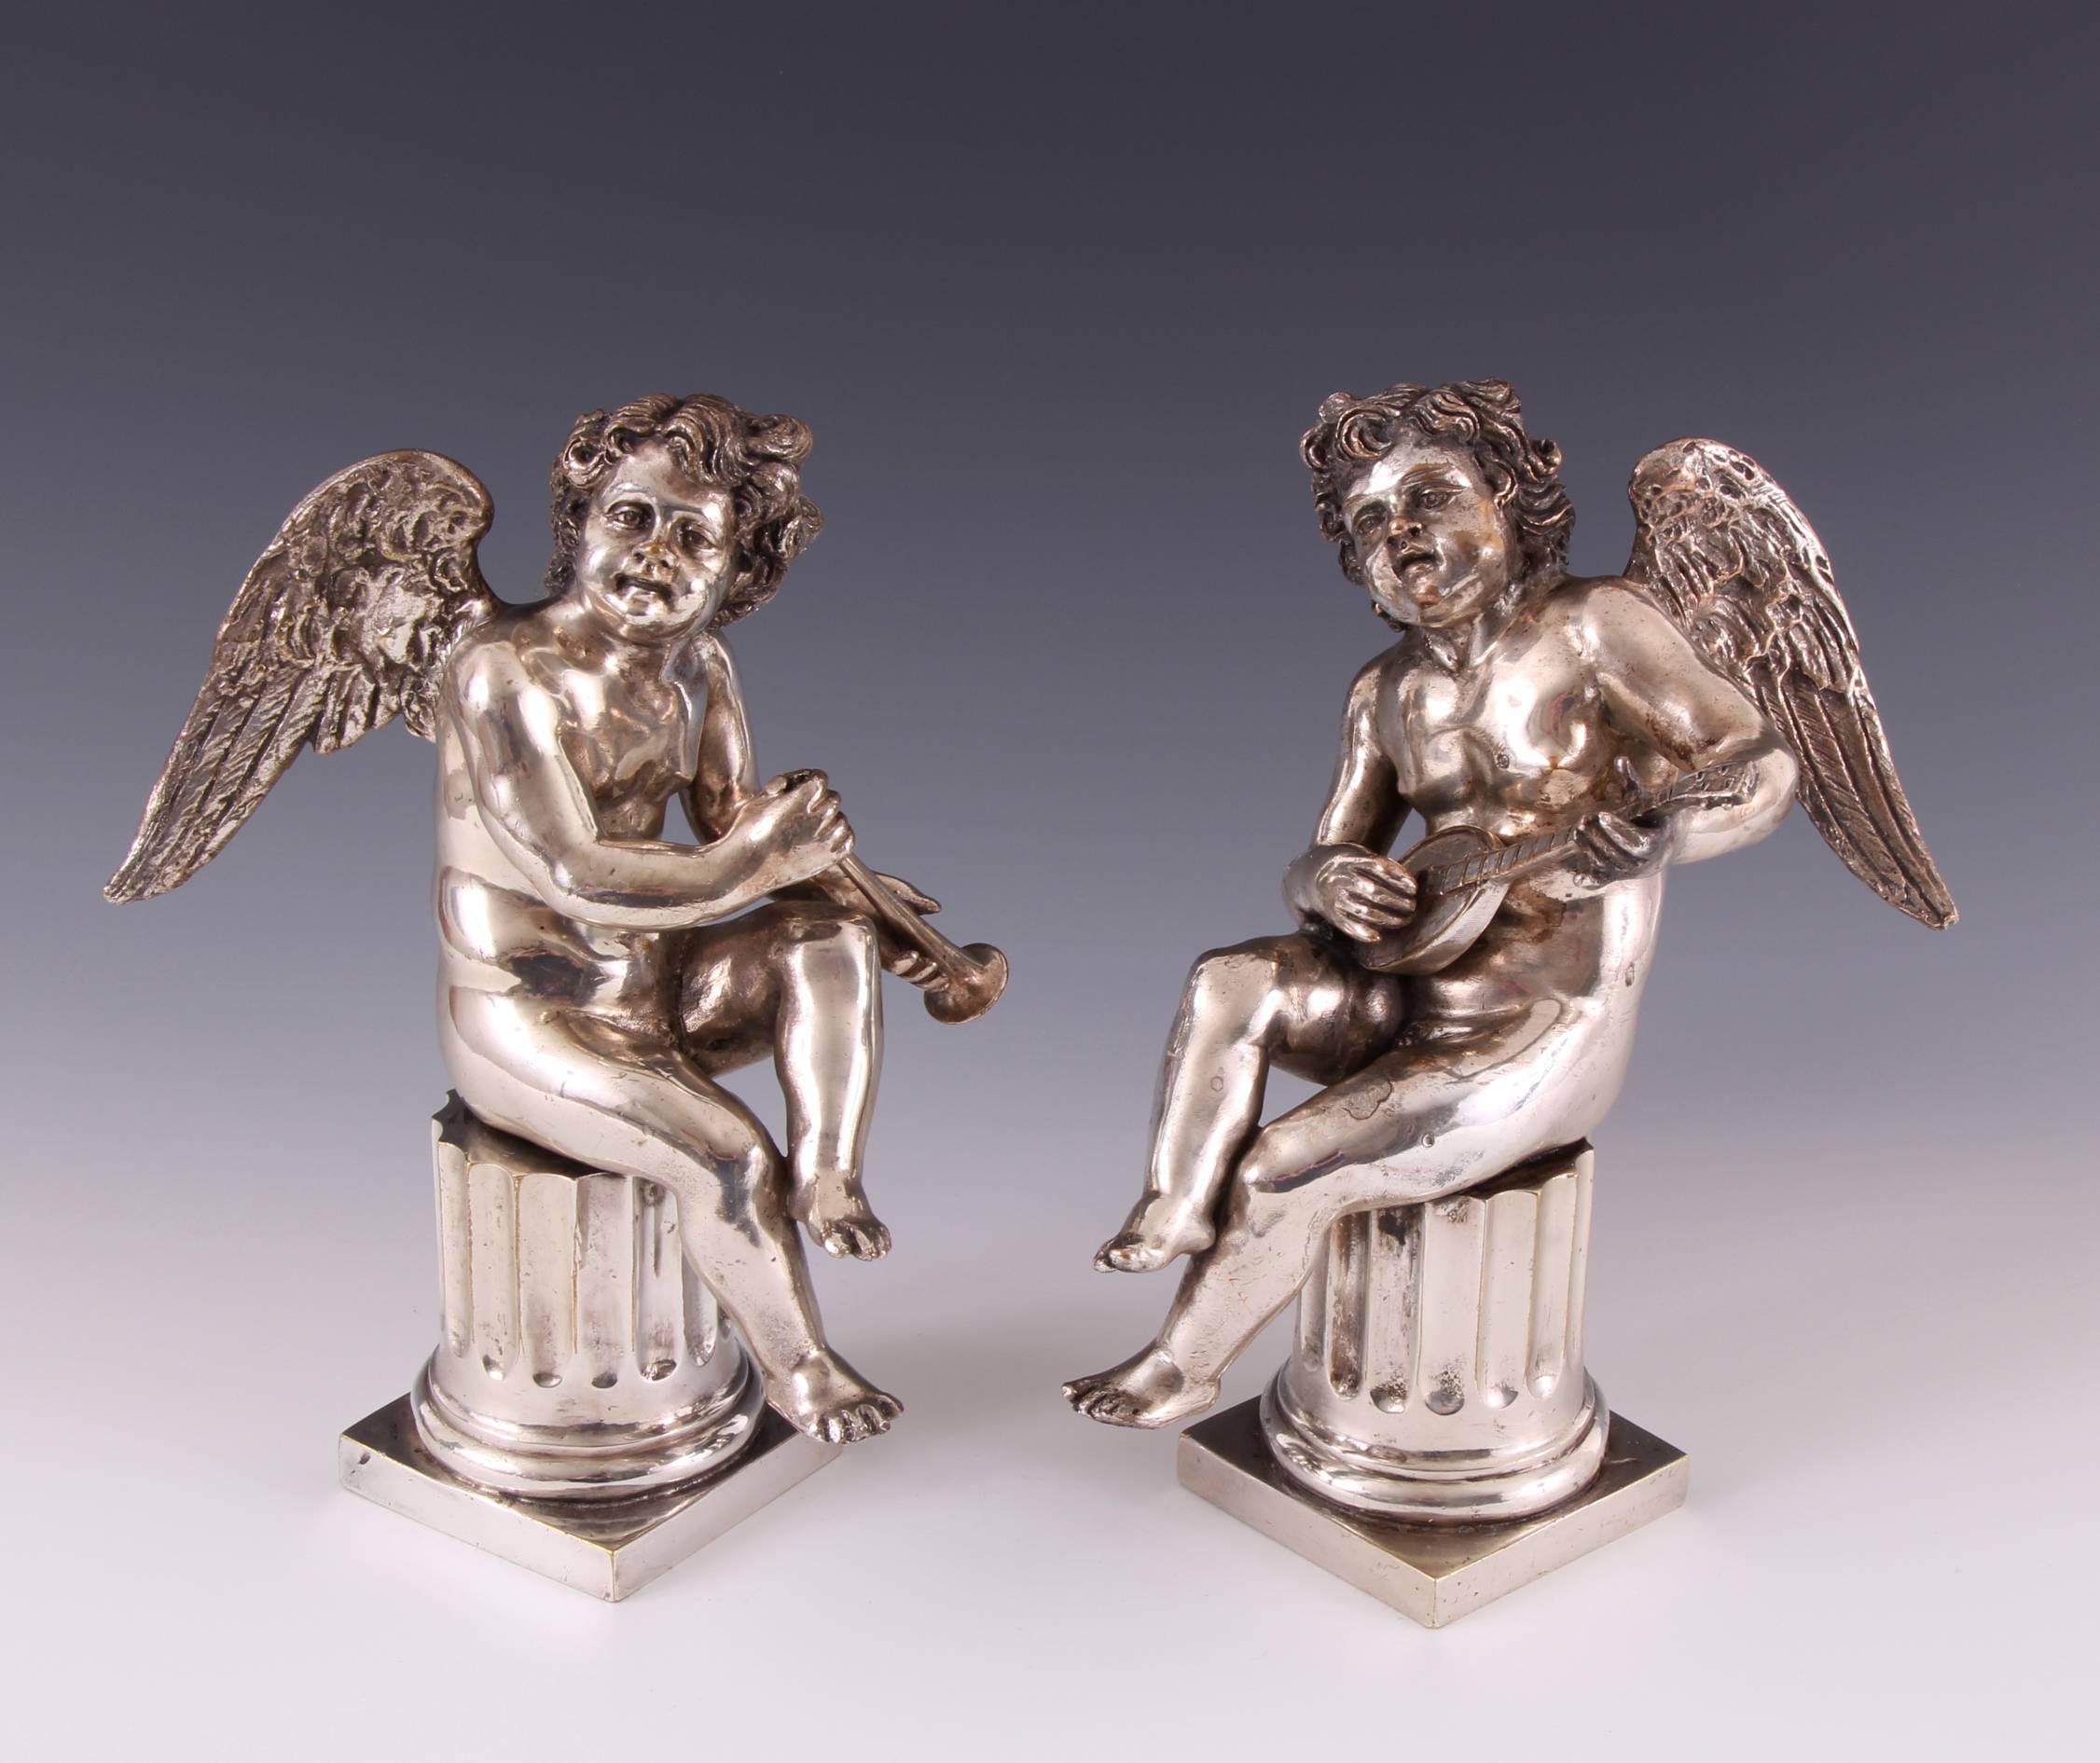 Schönes Paar von Louis XV versilberten Bronze musikalischen Putten auf Säulen aus dem 18. Die Versilberung dieses reizvollen und elegant geformten Paares weist eine wunderbare, gealterte Farbe und Patina auf. Jeder Cherub sitzt auf einer geriffelten